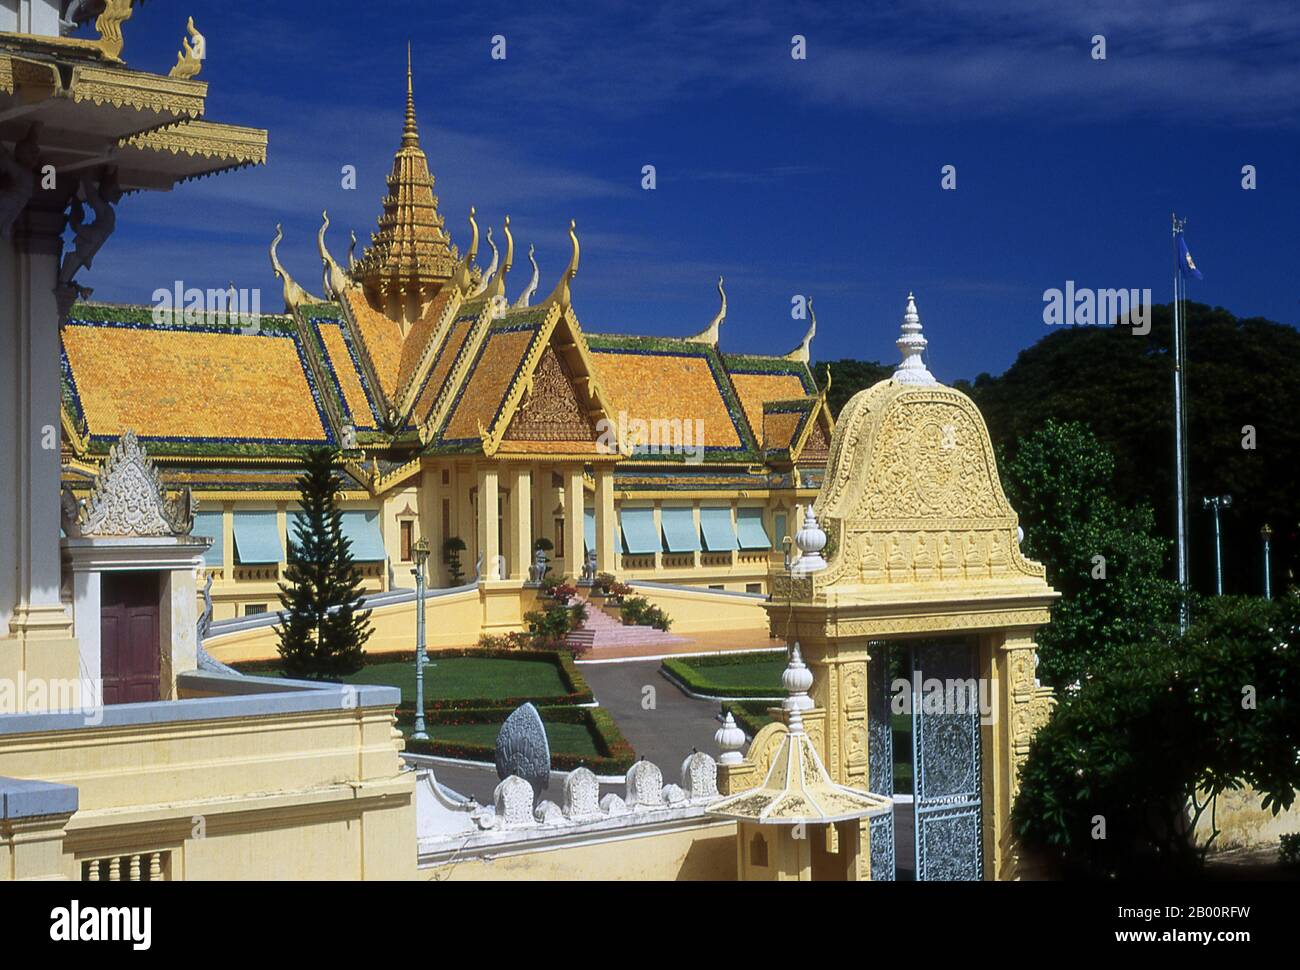 Cambogia: Prasat Khemarin (Palazzo Khemarin) la residenza privata del re, Palazzo reale e Pagoda d'Argento, Phnom Penh. Il Palazzo reale (Preah Barum Reacha Veang nei Preah Reacheanachak Kampuchea) e la Pagoda d'Argento, a Phnom Penh, sono un complesso di edifici che serve come residenza reale del re di Cambogia. Il suo nome completo in lingua khmer è Preah Barom Reachea Veang Chaktomuk. I re di Cambogia lo hanno occupato da quando è stato costruito nel 1860, con un periodo di assenza quando il paese è entrato in agitazione durante e dopo il regno dei Khmer rossi. Foto Stock